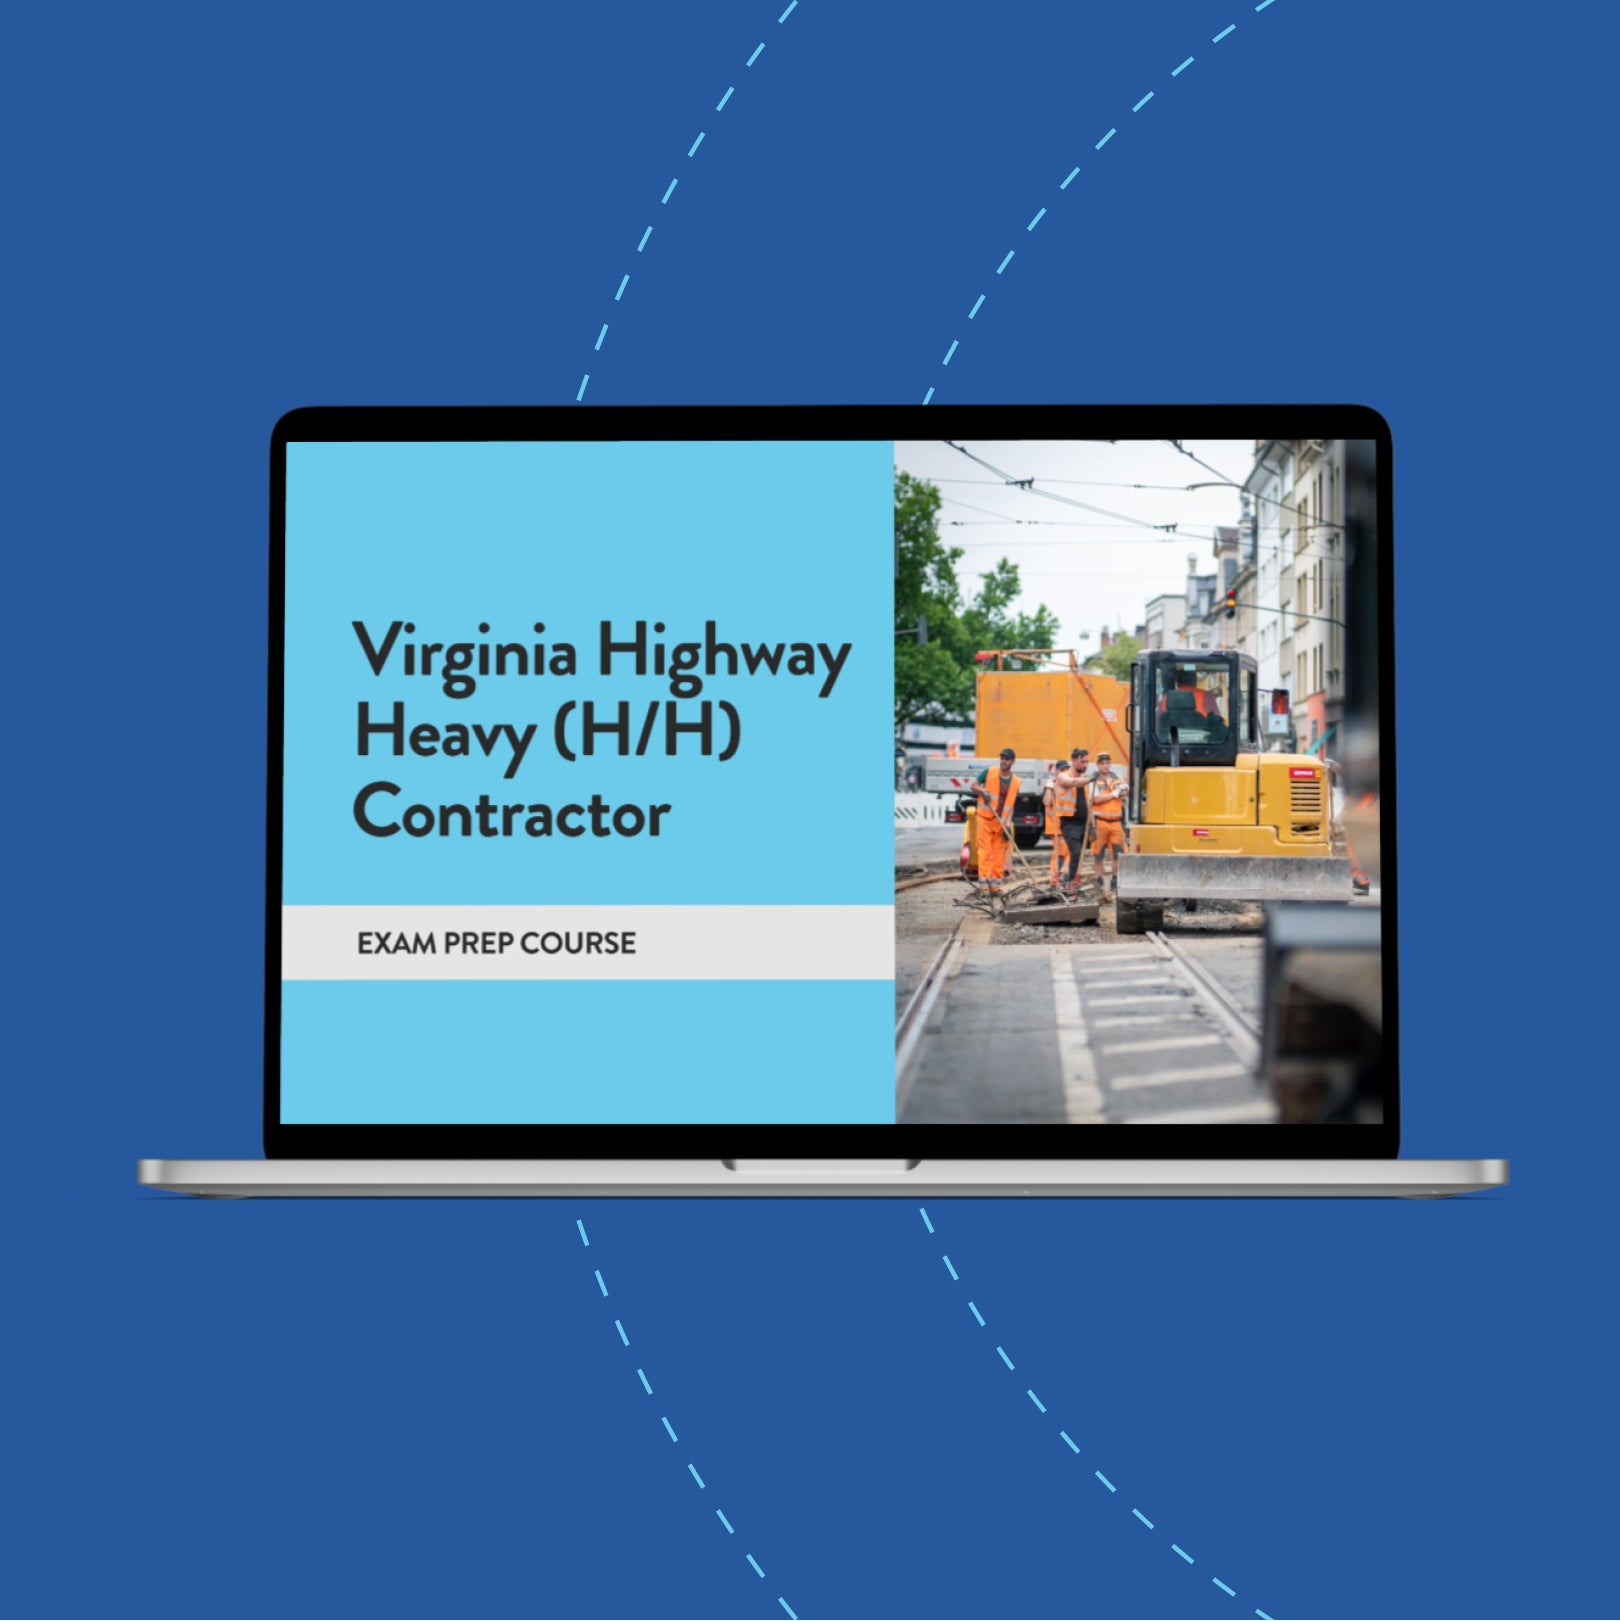 Virginia Highway Heavy (H/H) Contractor Exam Prep Course